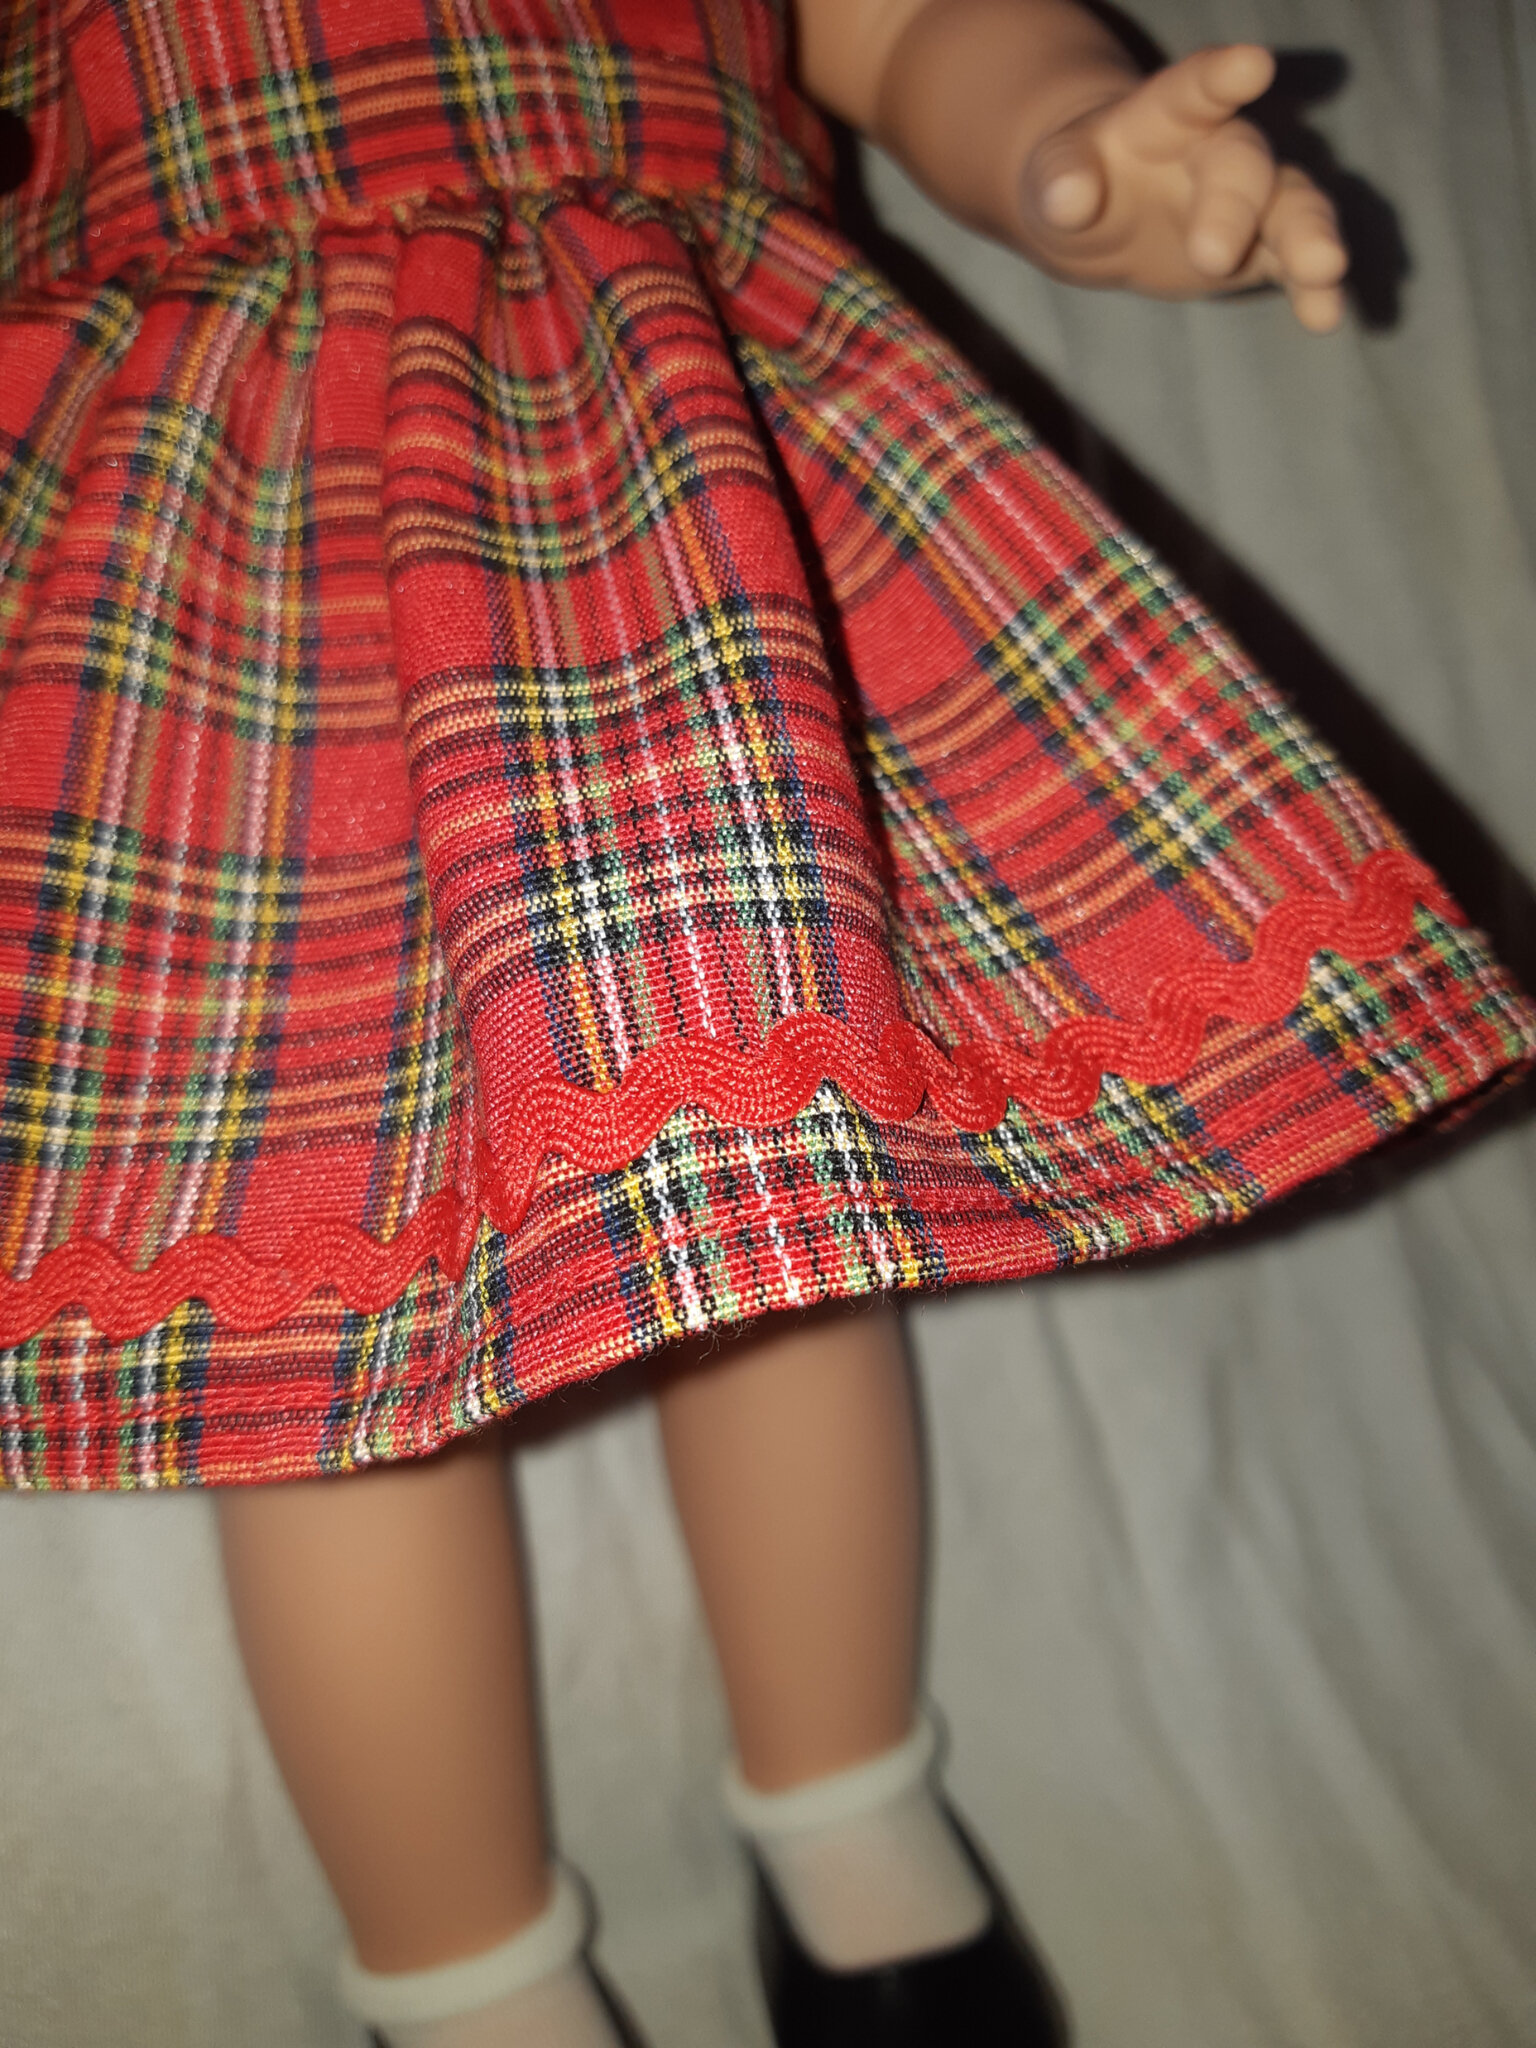 Vêtements de poupées : une robe chic-et-sage - Poupées, couture et